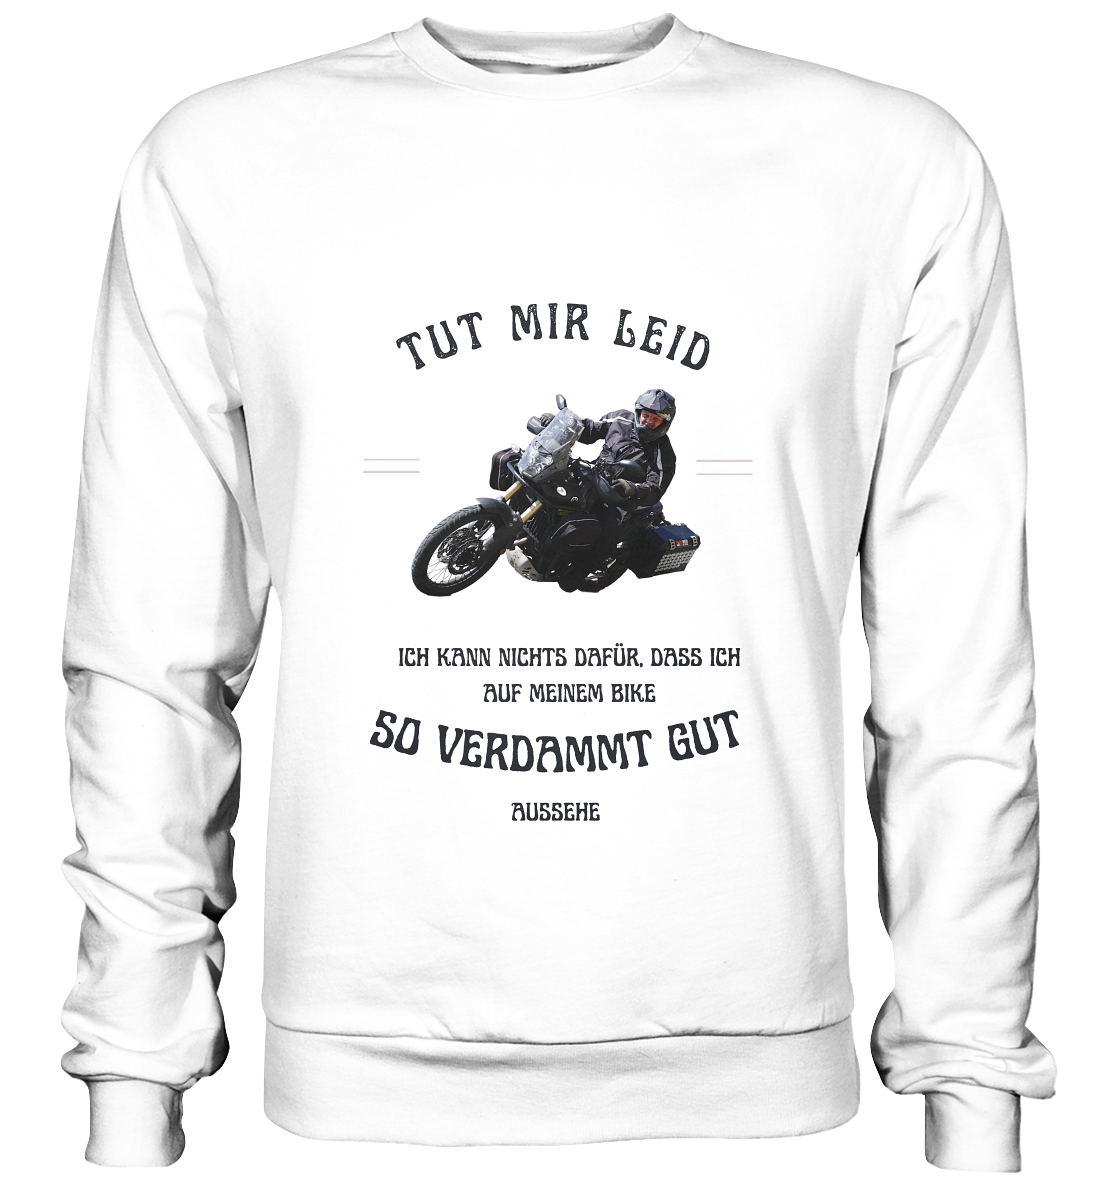 "Tut mir leid, ich kann nichts dafür, dass ich auf meinem Bike so verdammt gut aussehe" für Bernd | individualisiertes Sweatshirt mit Foto-Druck und Motorradspruch in dunklem Design